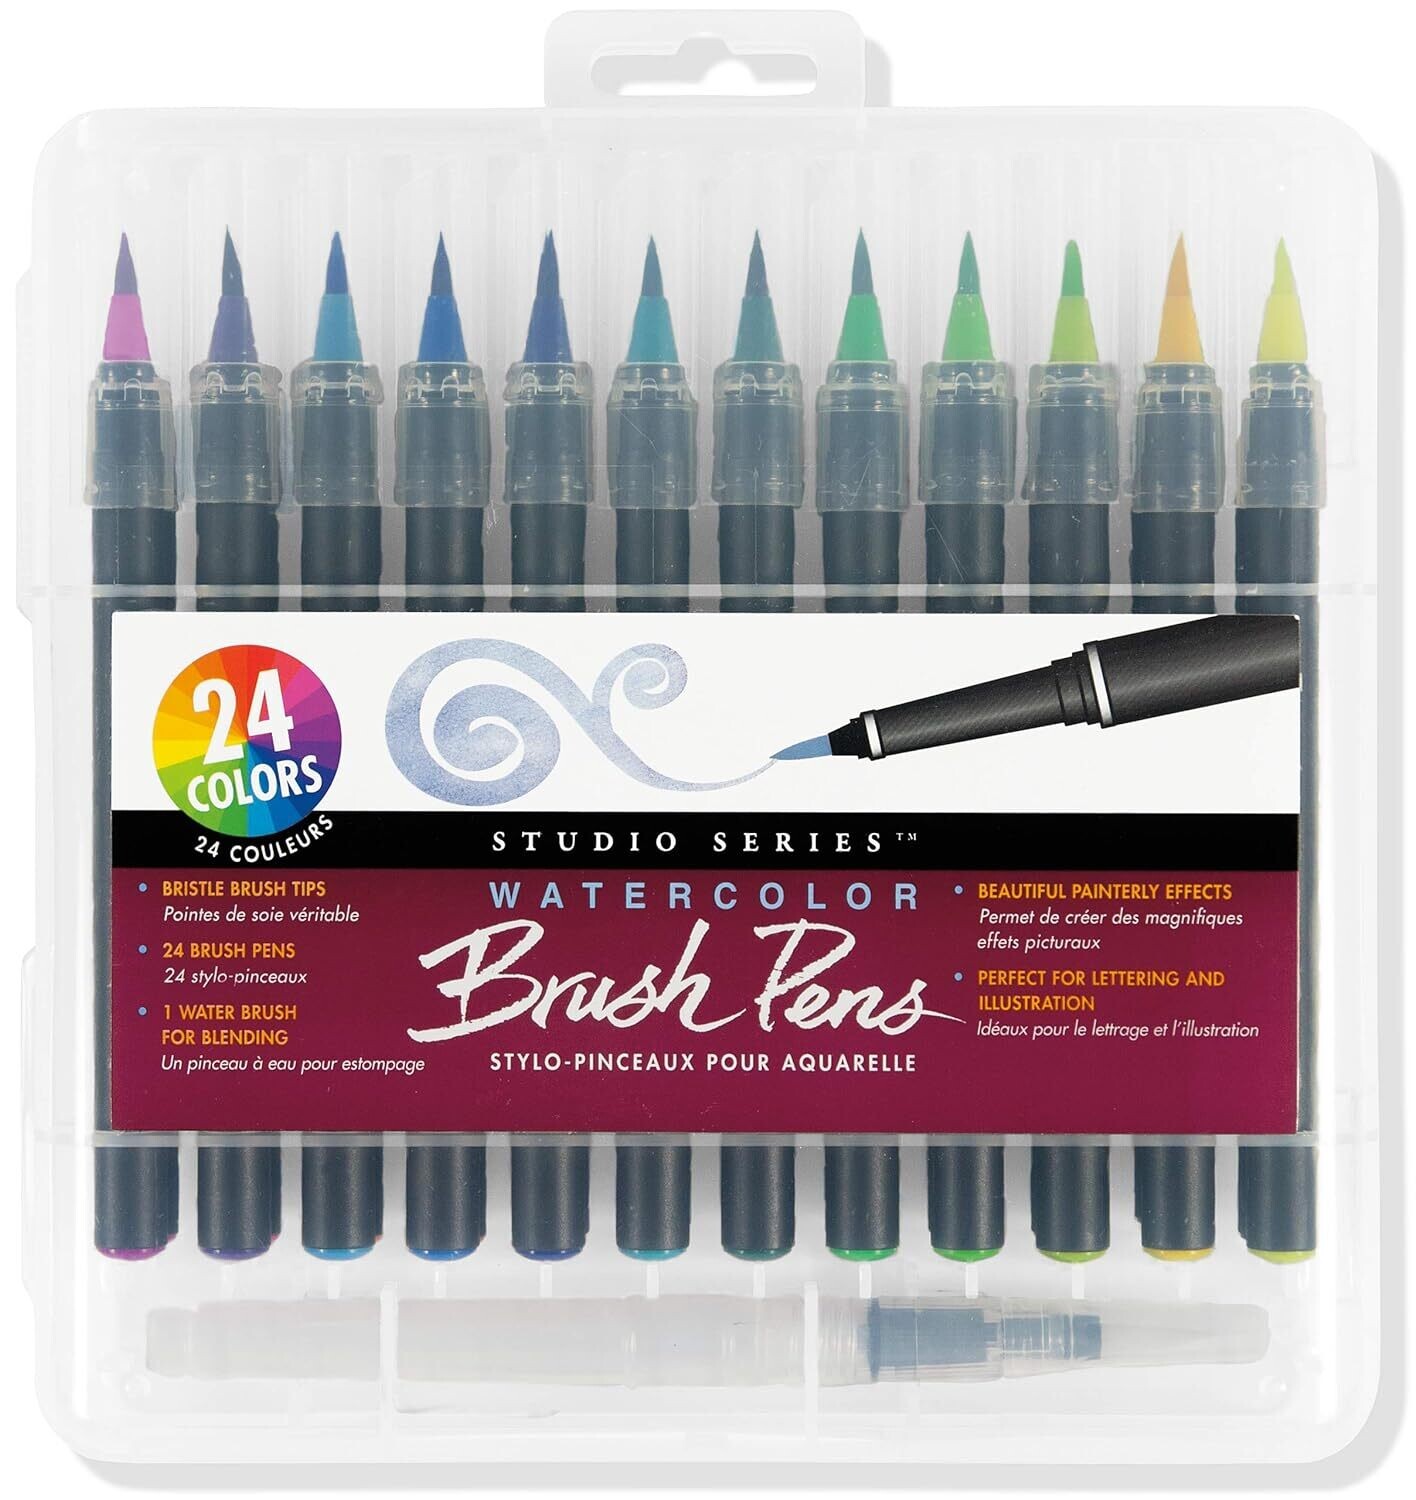 Studio Series Watercolor Brush Pen 29158